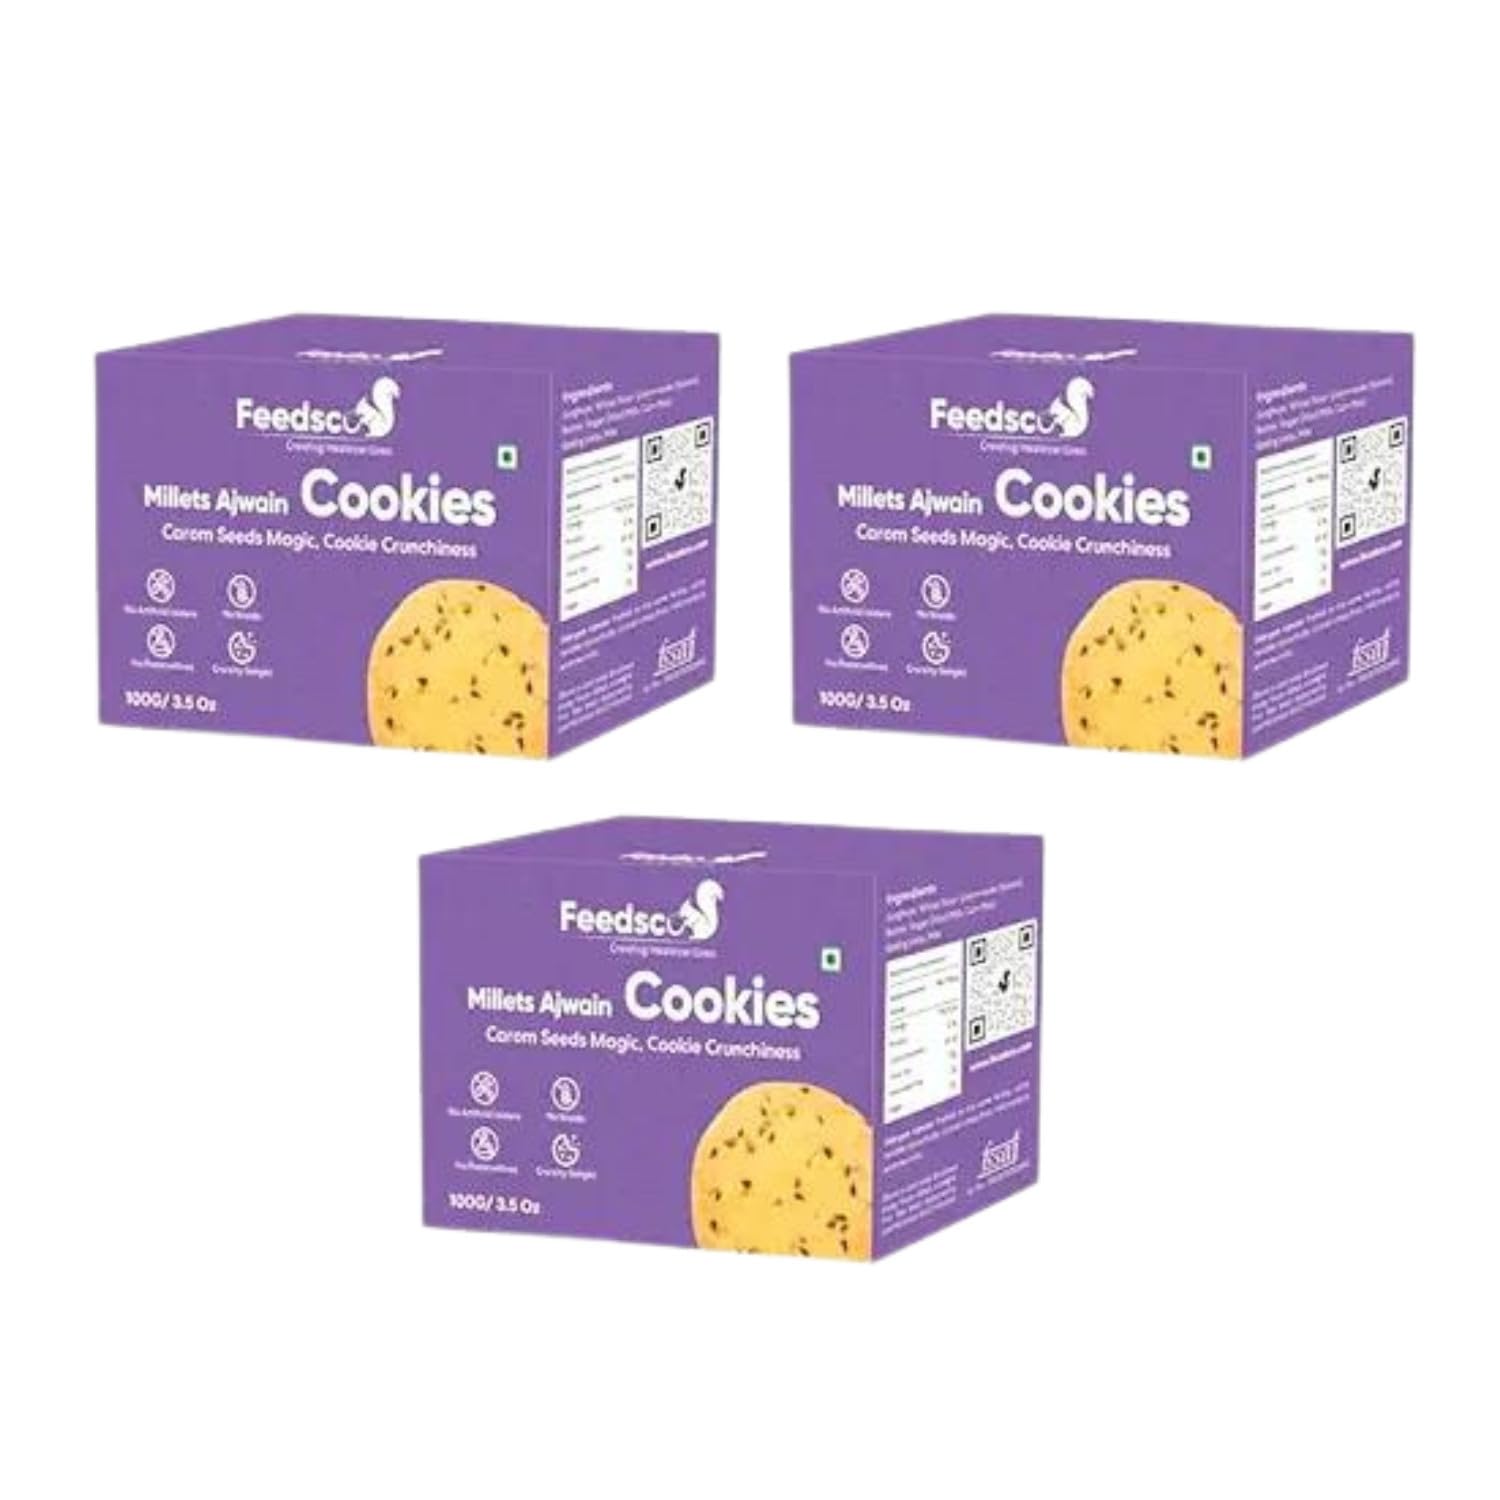 Feedsco Millets Ajwain Cookies Tasty & Healthy Cookies |100g | Pack of 3